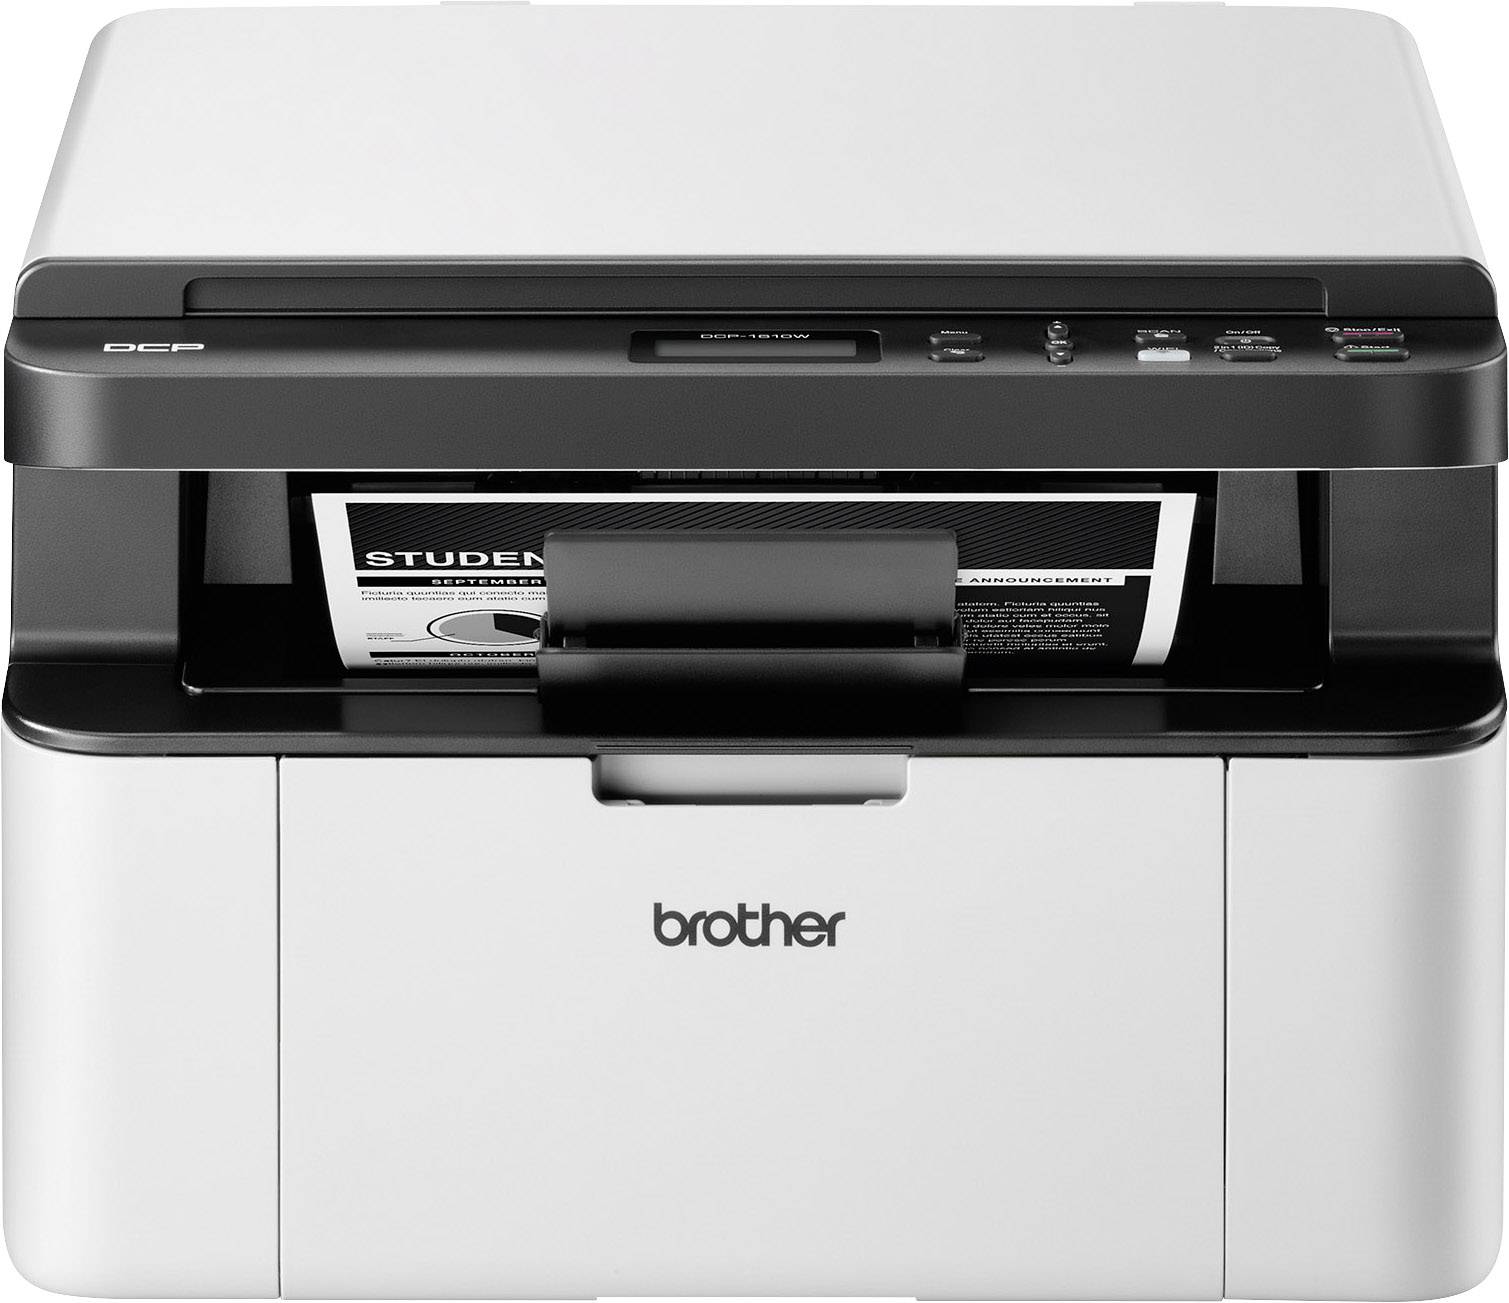 Brother DCP-1610W Schwarzweiß Laser Multifunktionsdrucker A4 Drucker,  Scanner, Kopierer USB, WLAN kaufen